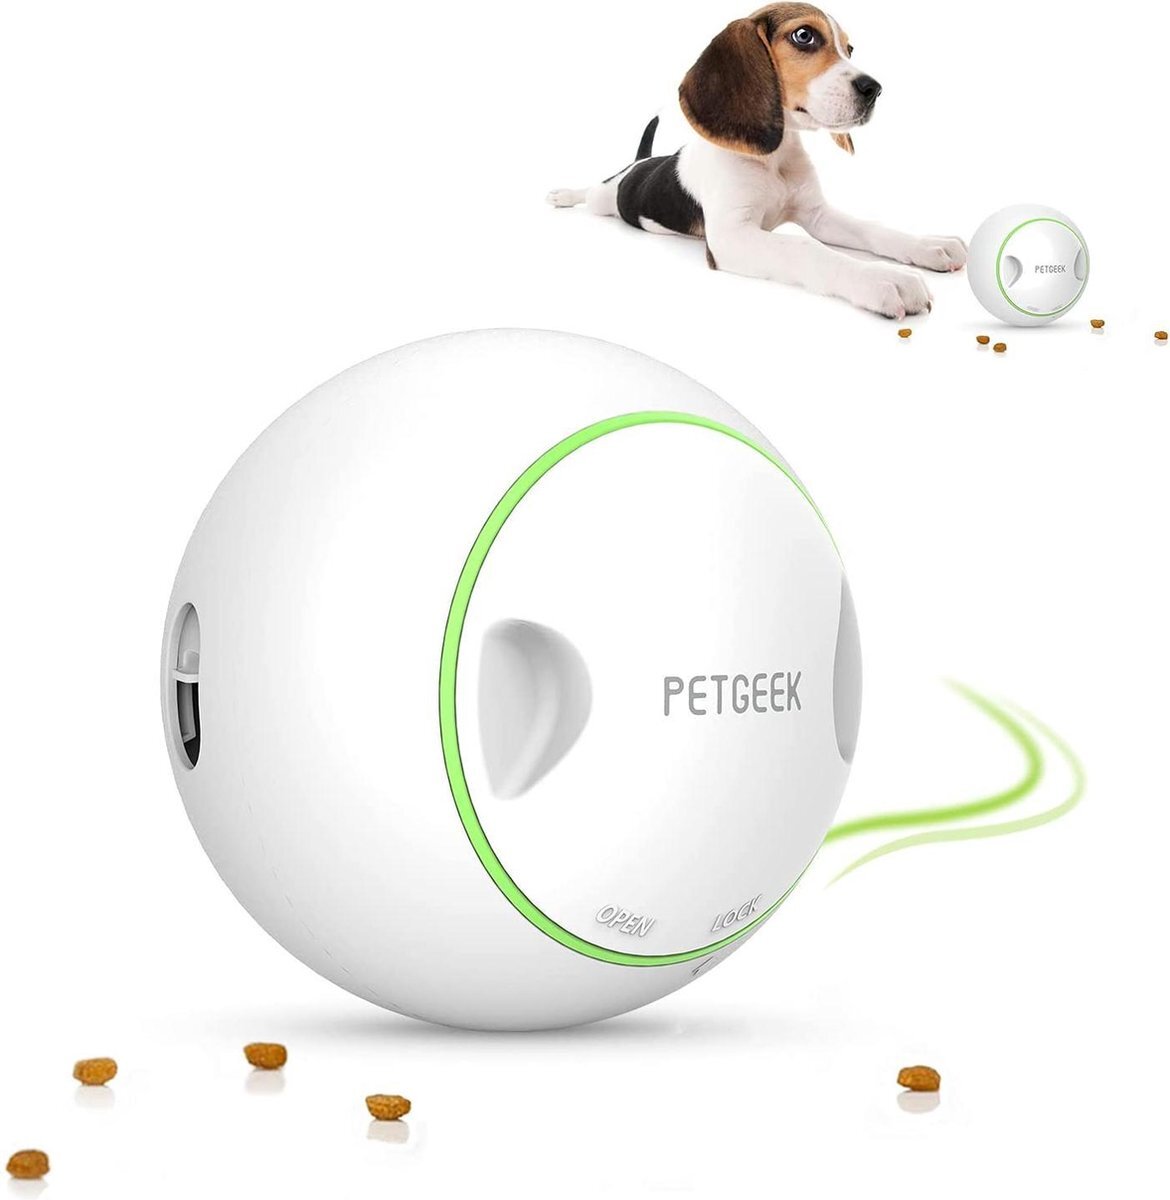 aanbieding Petgeek Foodie Orb - Honden Speelgoed bal - Puppy speelgoed - Hondenspeeltje - honden speelgoed - snuffelmat hond - honden speelgoed intelligentie